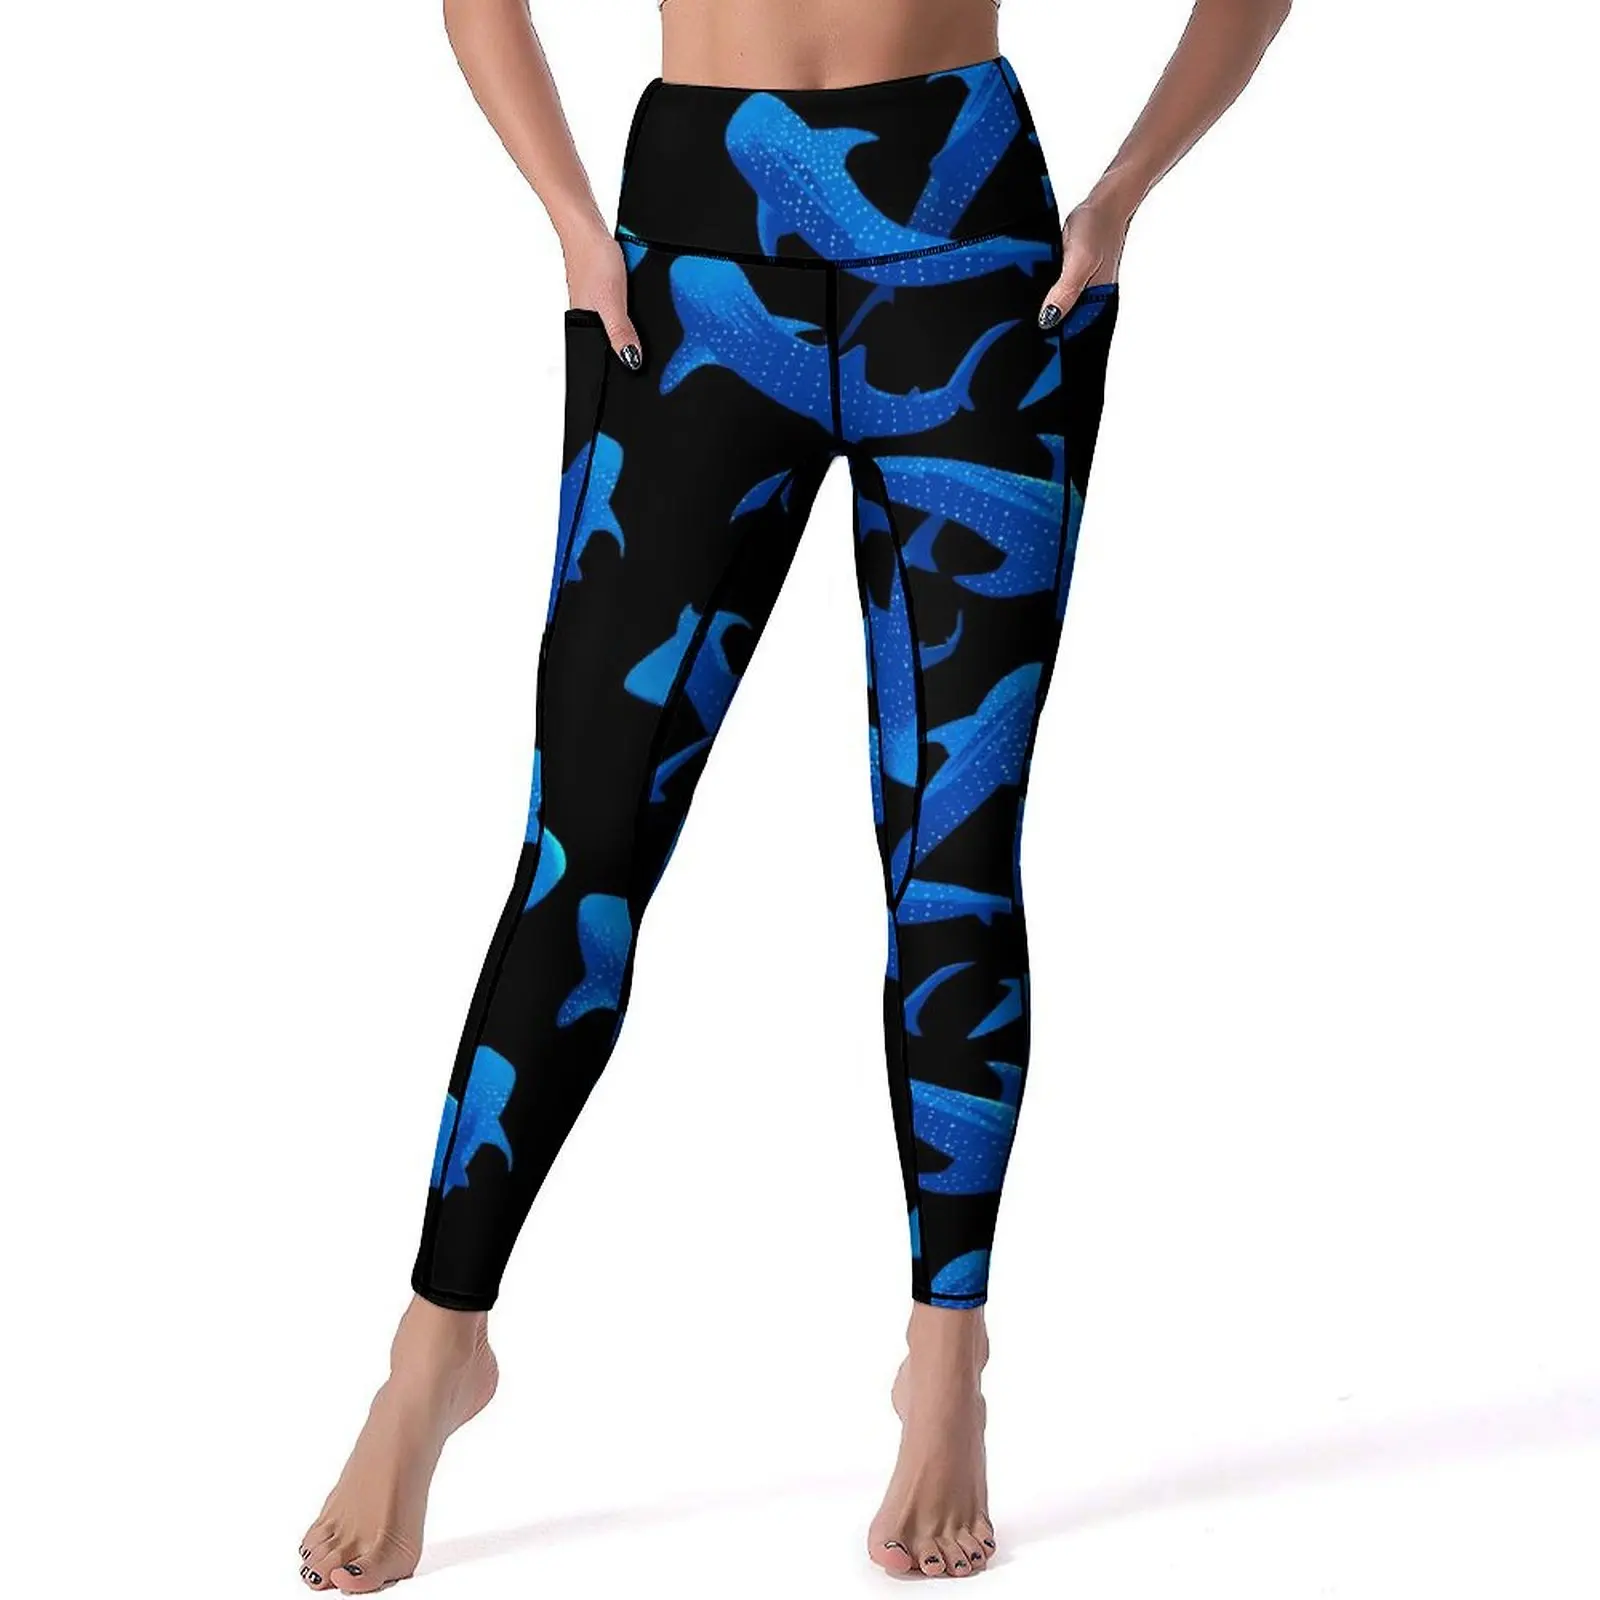 

Леггинсы с принтом акулы и Кита, пикантные синие штаны для йоги и тренажерного зала, быстросохнущие спортивные трико с высокой талией и карманами, дышащие леггинсы с графическим рисунком